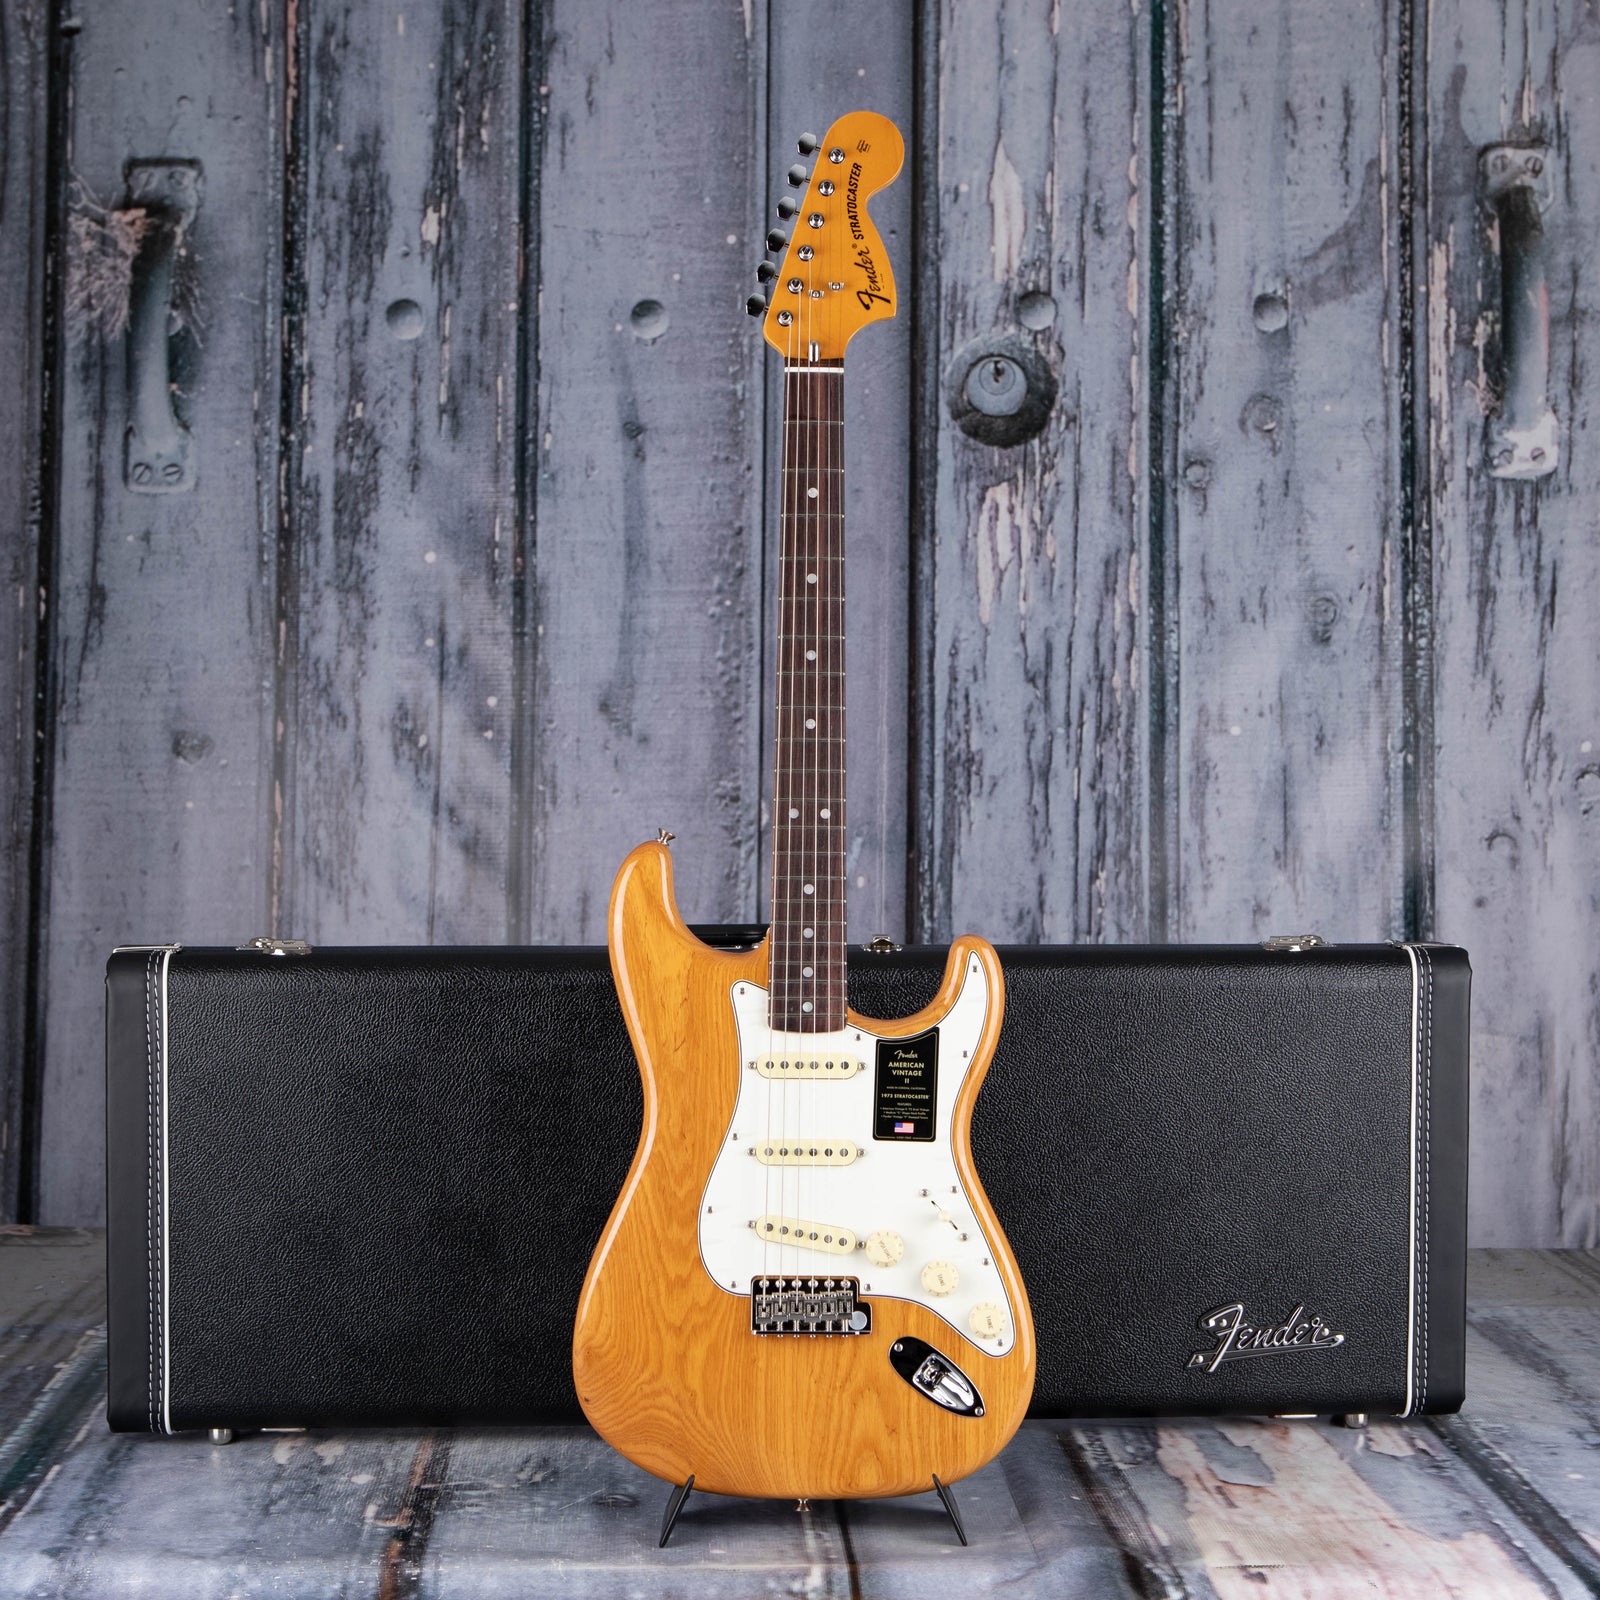 Fender American Vintage II 1973 Stratocaster Aged Natural